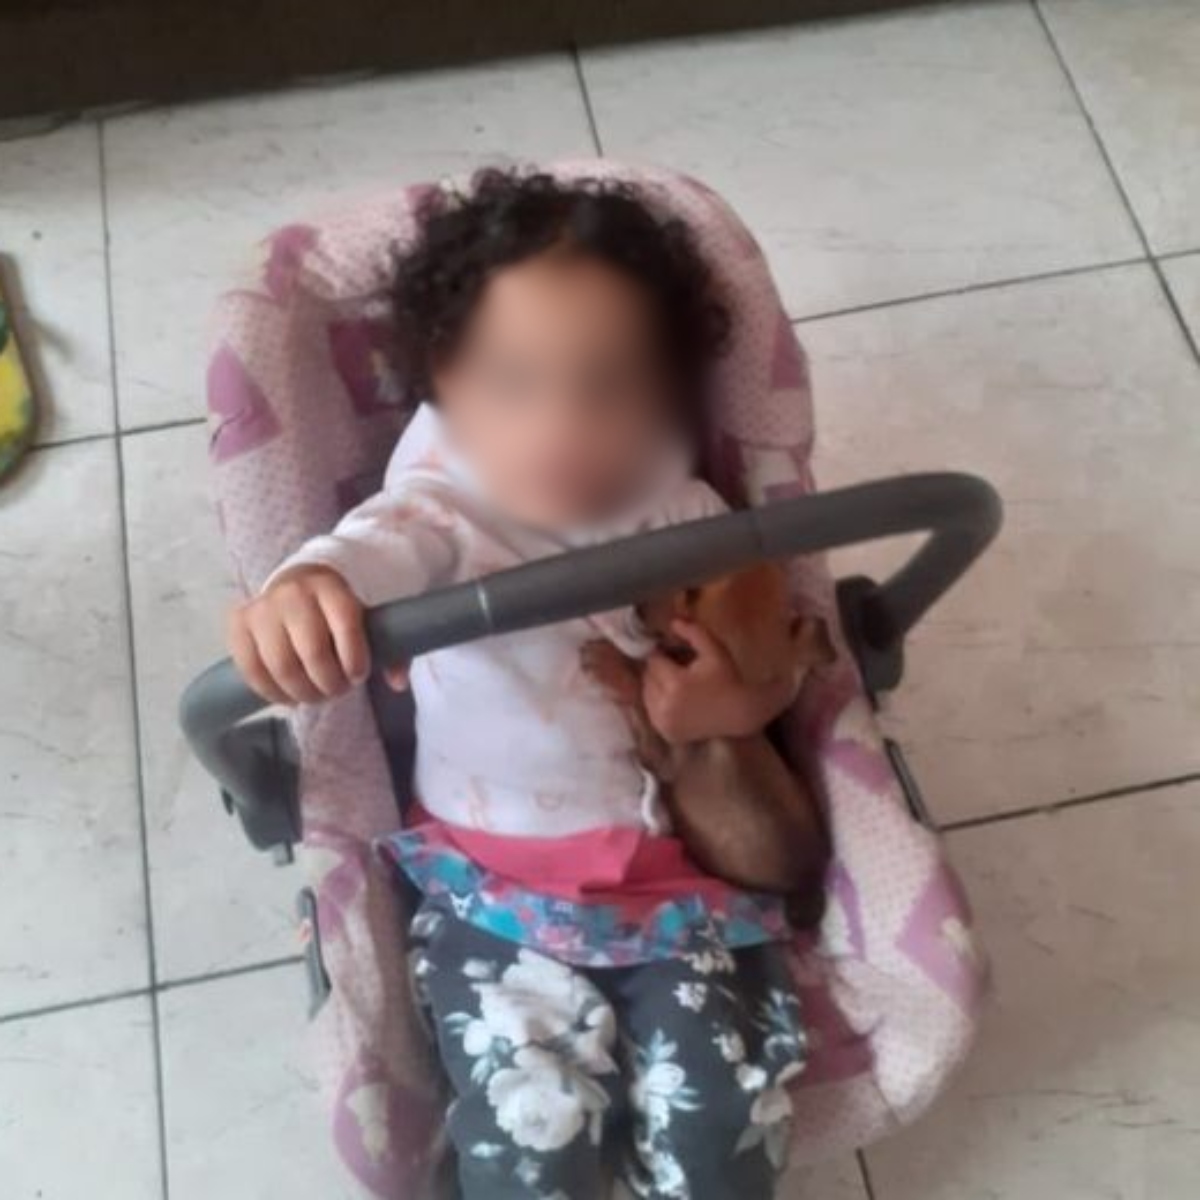  O sequestro da bebê Isabela da Silva Nascimento, de 1 ano e 11 meses, na última sexta-feira (30), em São Paulo, teria sido planejado por uma mulher de prenome Sandra, que se aproximou da mãe da vítima para tentar ficar com a bebê, de acordo com a Polícia Civil. 